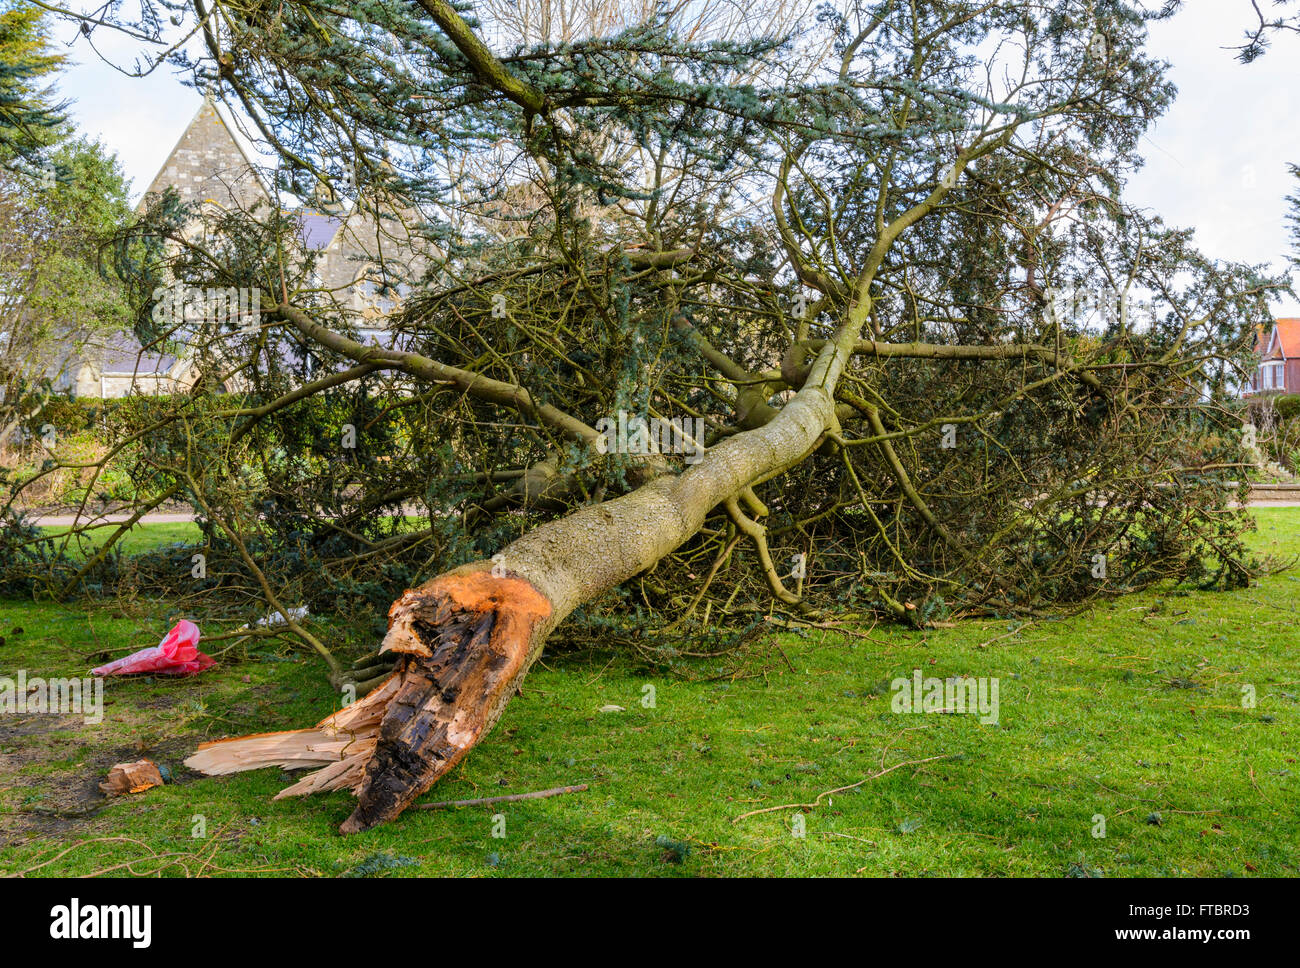 Arbre endommagé. Branche d'un arbre cassé du tronc principal pendant l'gales dans le West Sussex, Angleterre, Royaume-Uni. Banque D'Images